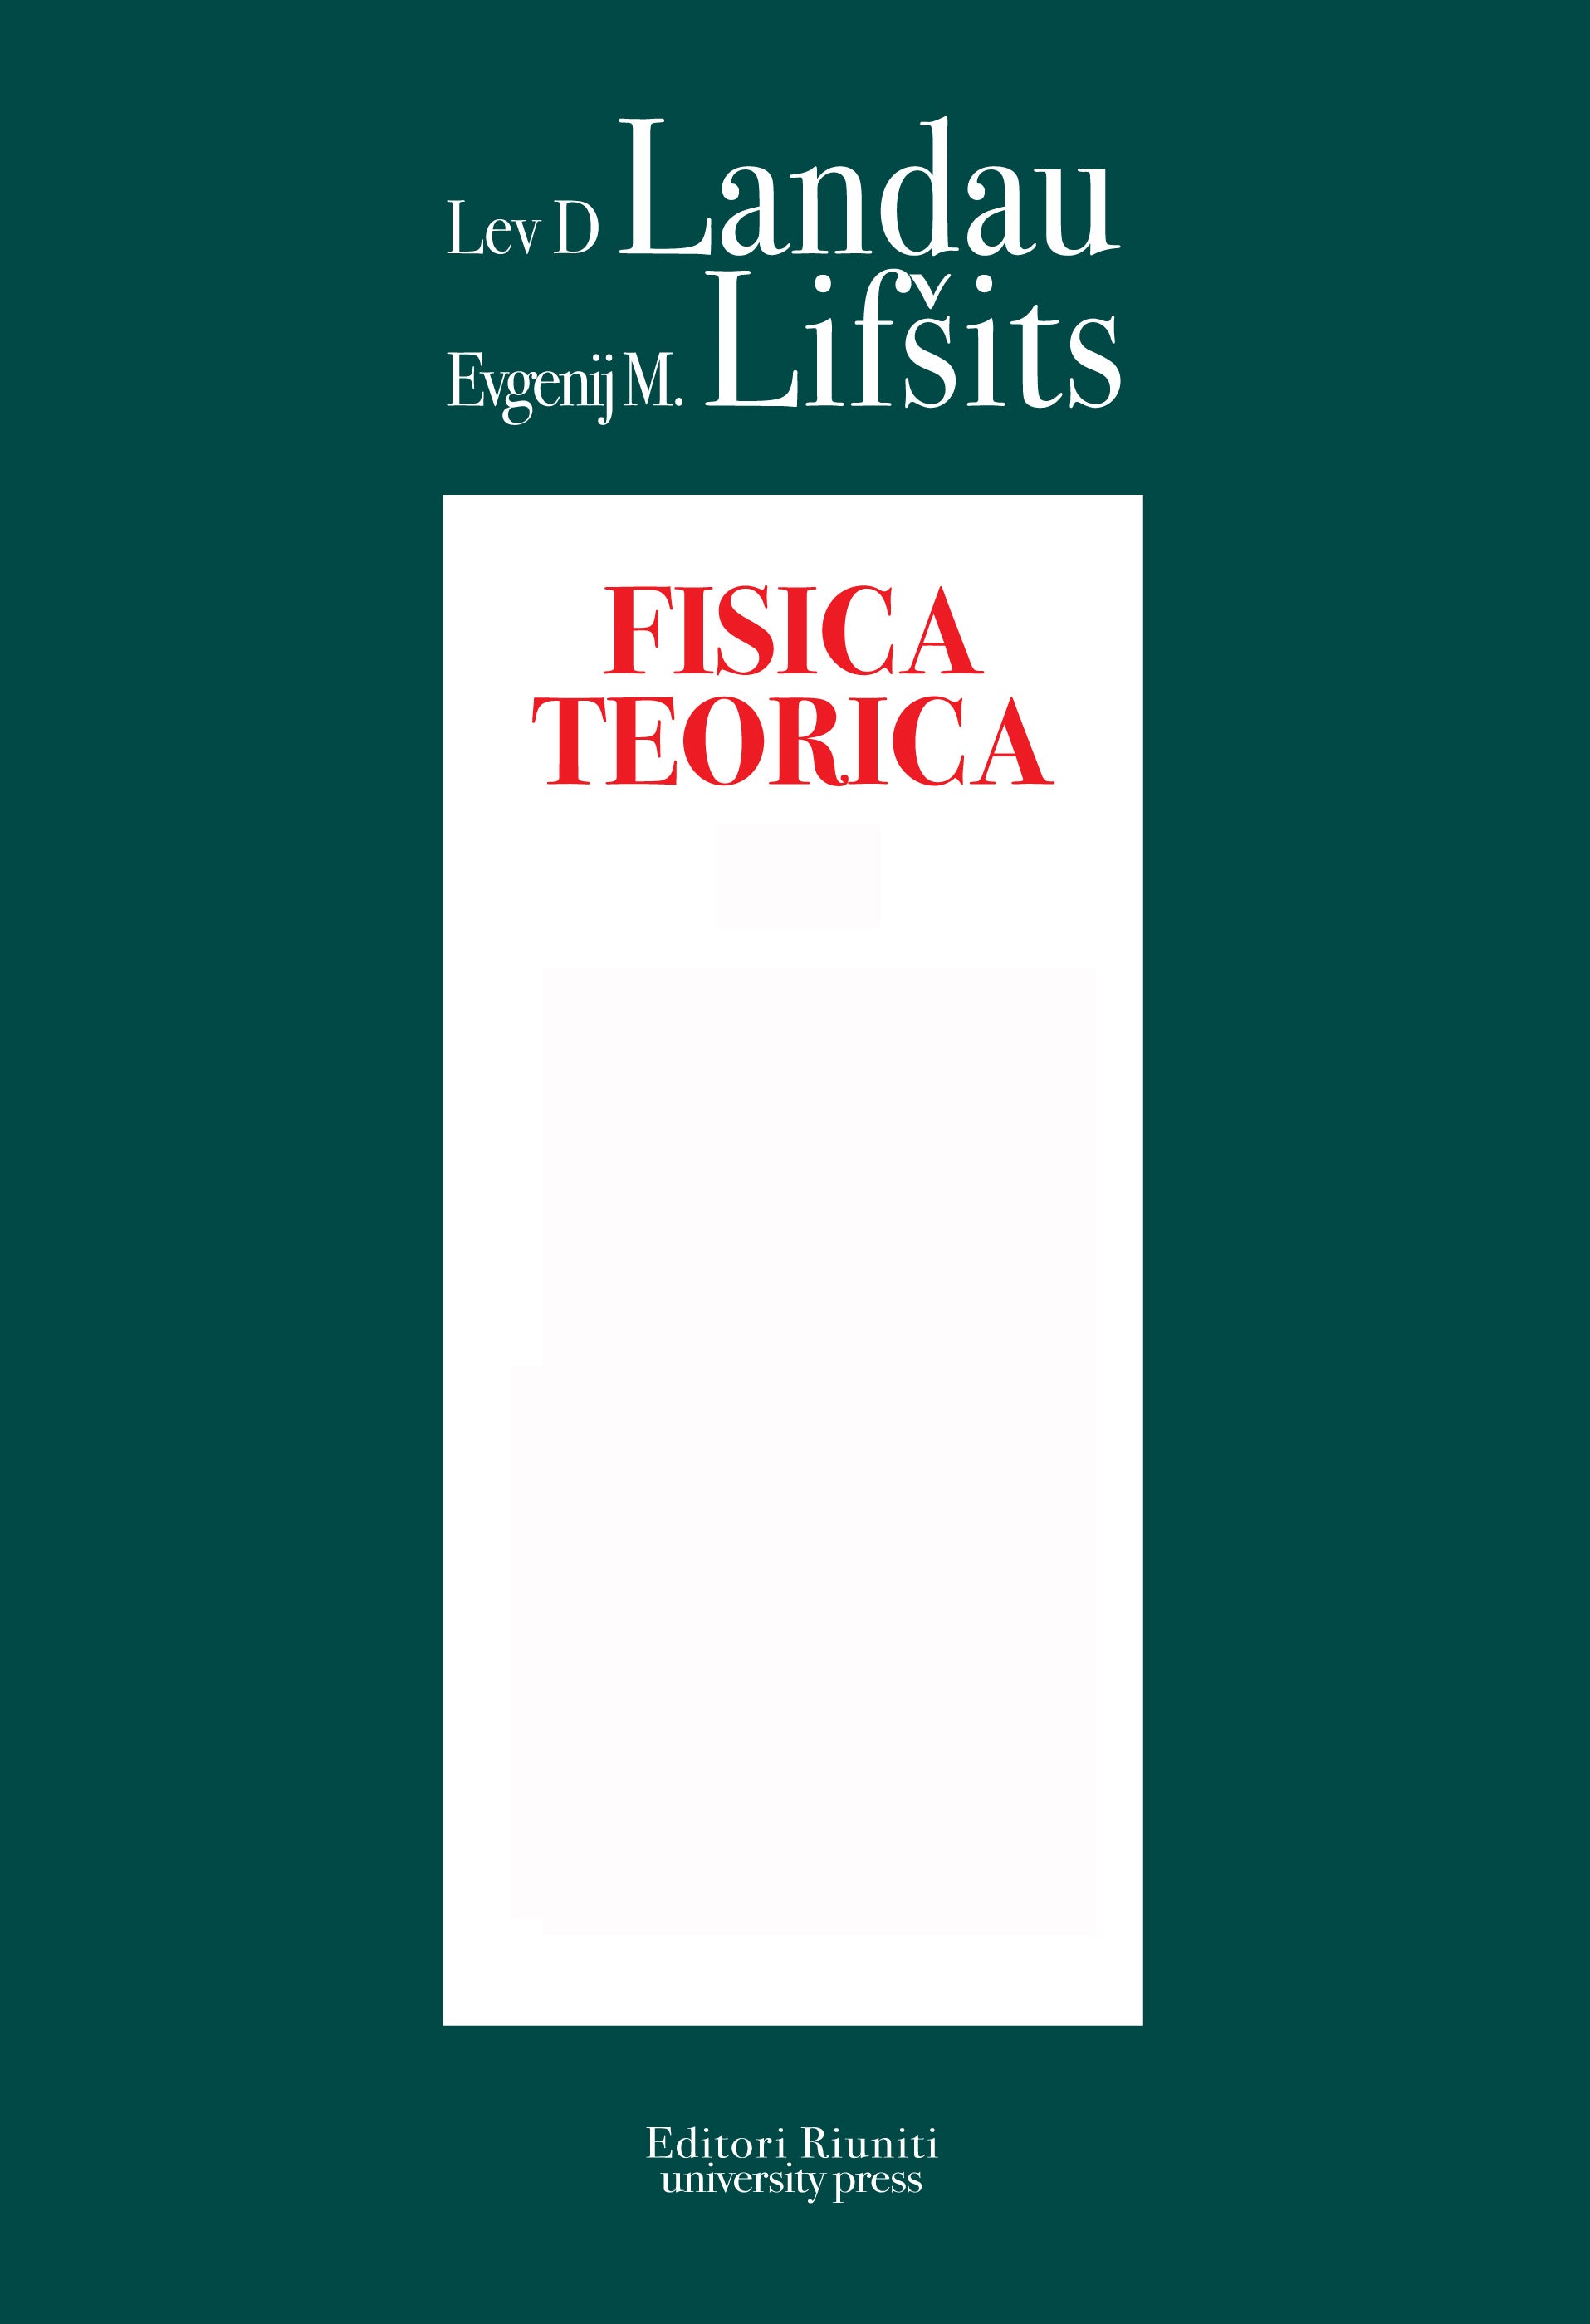 Serie completa di fisica teorica di Landau e Lifšits vol. 1, 2, 3, 4, 5, 6, 7, 8, 9, 10